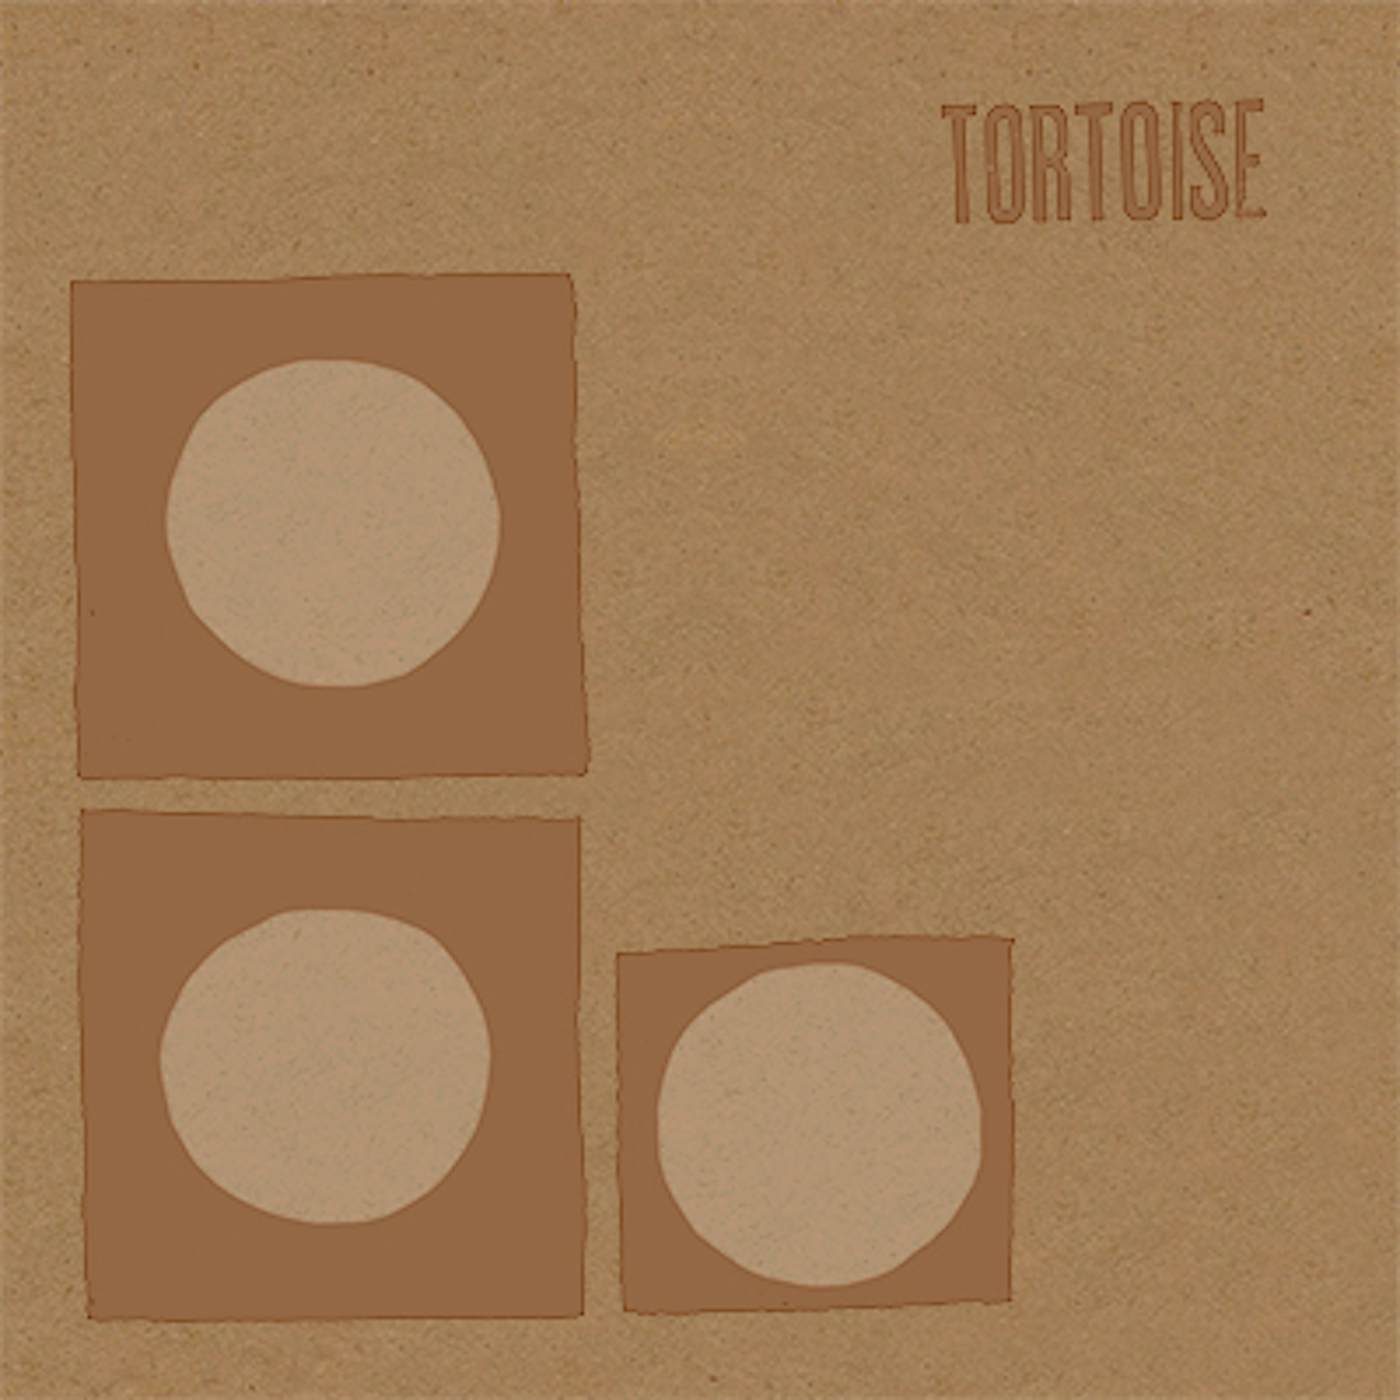 Tortoise Vinyl Record